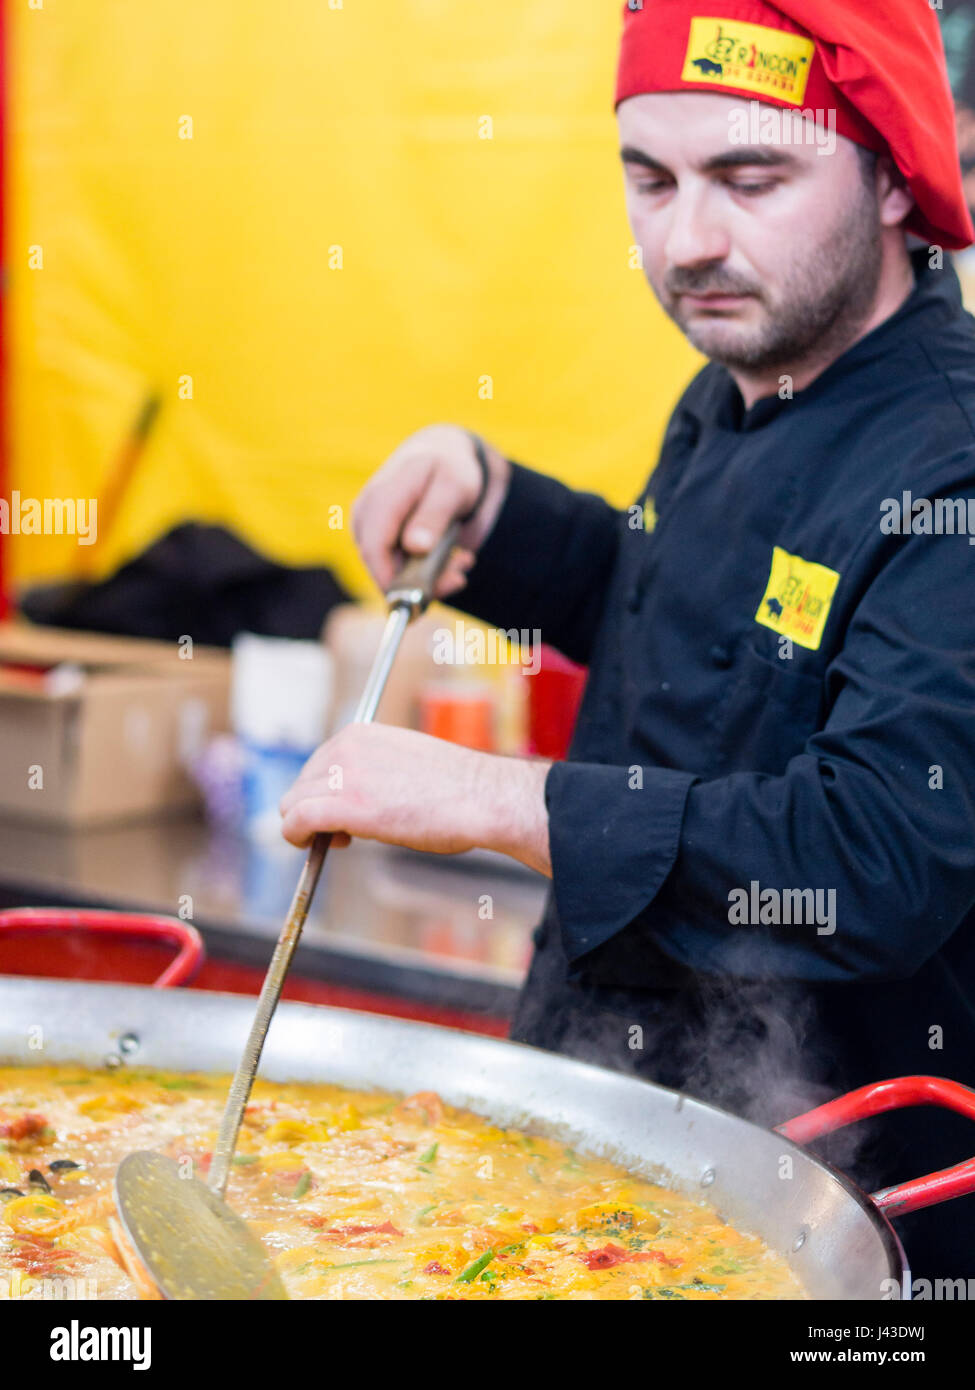 Machen und serviert spanische Paella zu den europäischen Nationen Street Food Festival in Cremona, Mai Lombardei, Italien, 2017 Stockfoto